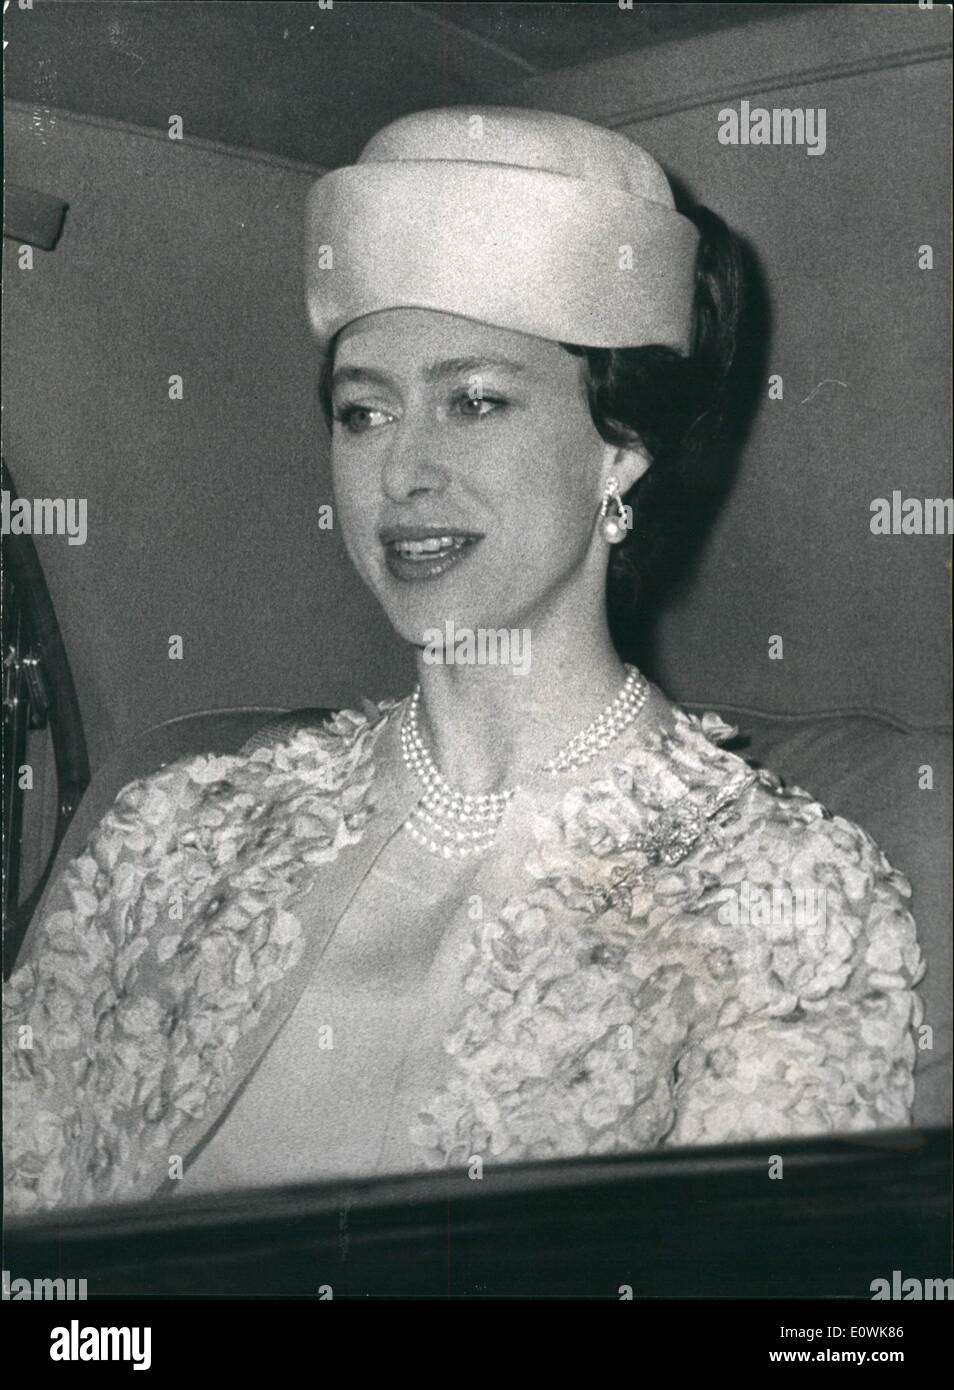 Avril 04, 1963 - mariage de la princesse Alexandra La princesse Margaret sur façon de cérémonie : Photo montre. Son Altesse Royale la Princesse Margaret dans sa voiture sur place à l'abbaye pour le mariage ce matin. Banque D'Images